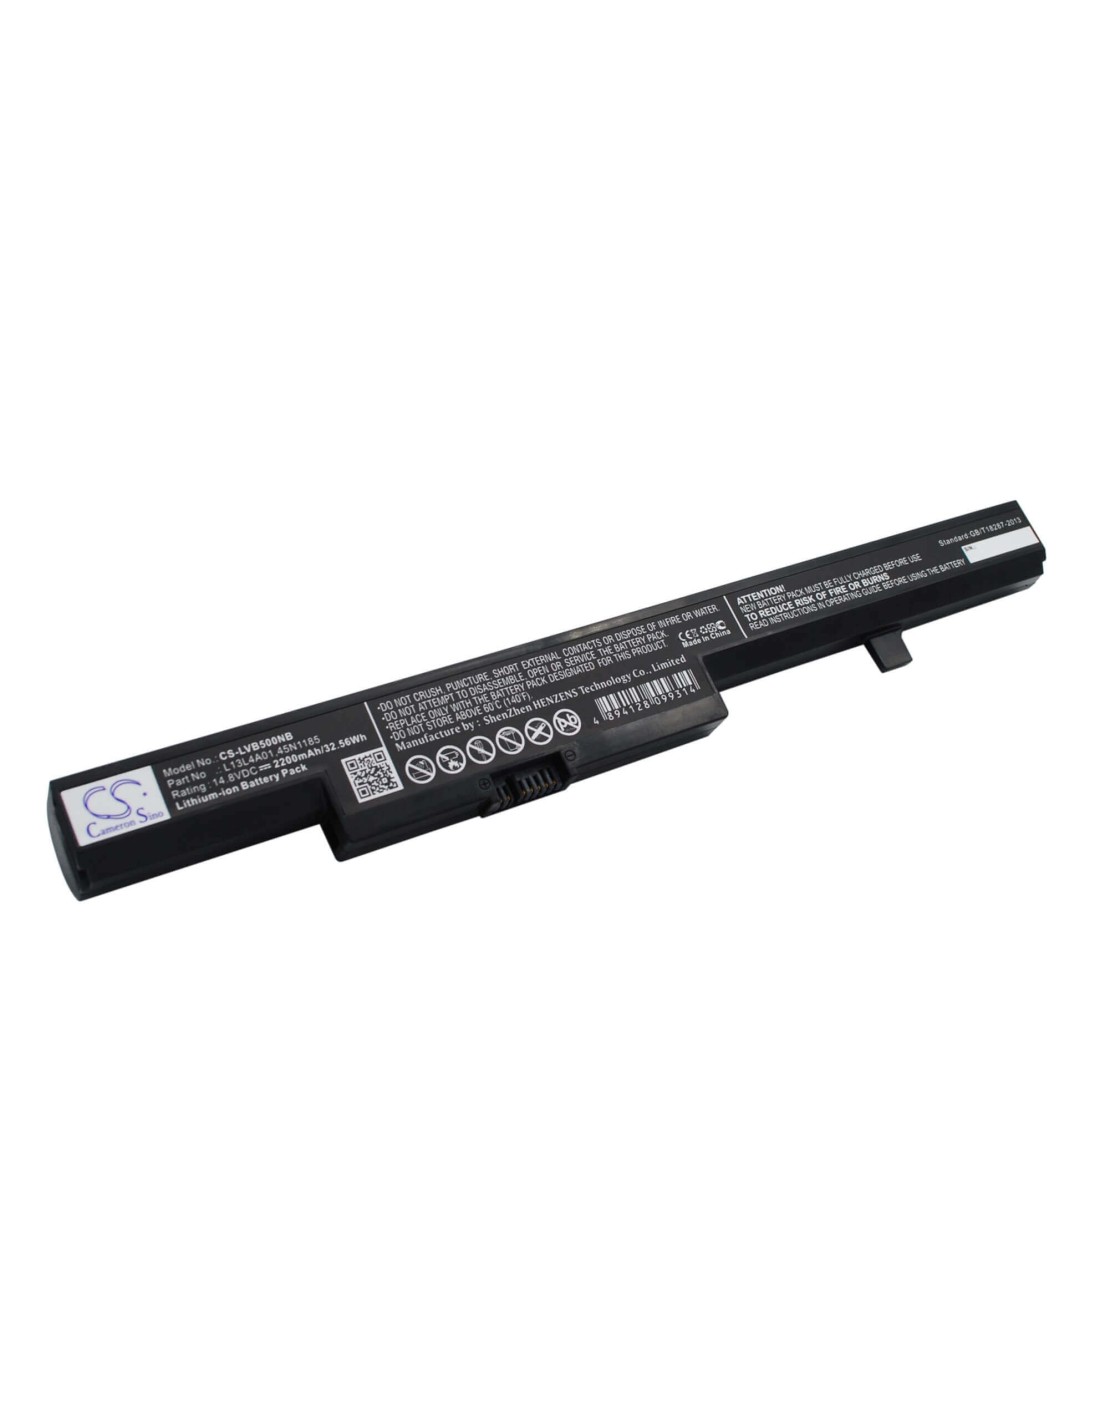 Black Battery for Lenovo B40, B40-30, B40-45 14.8V, 2200mAh - 32.56Wh